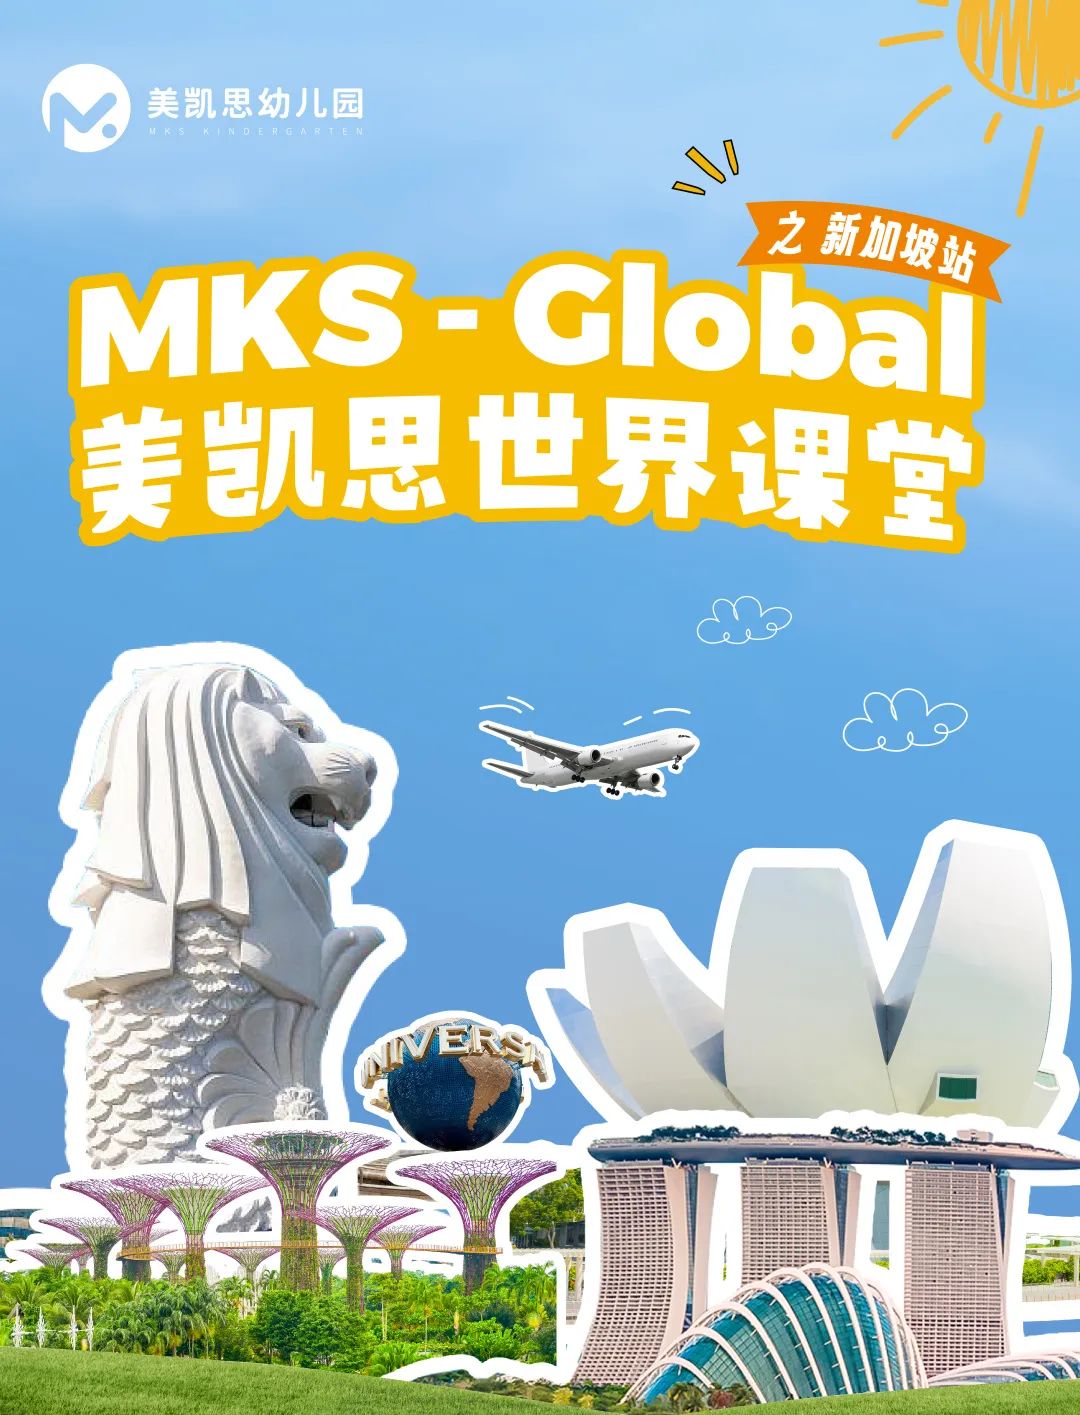 美凯思 | MKS Global世界课堂新加坡站 — 大世界是我的小课堂